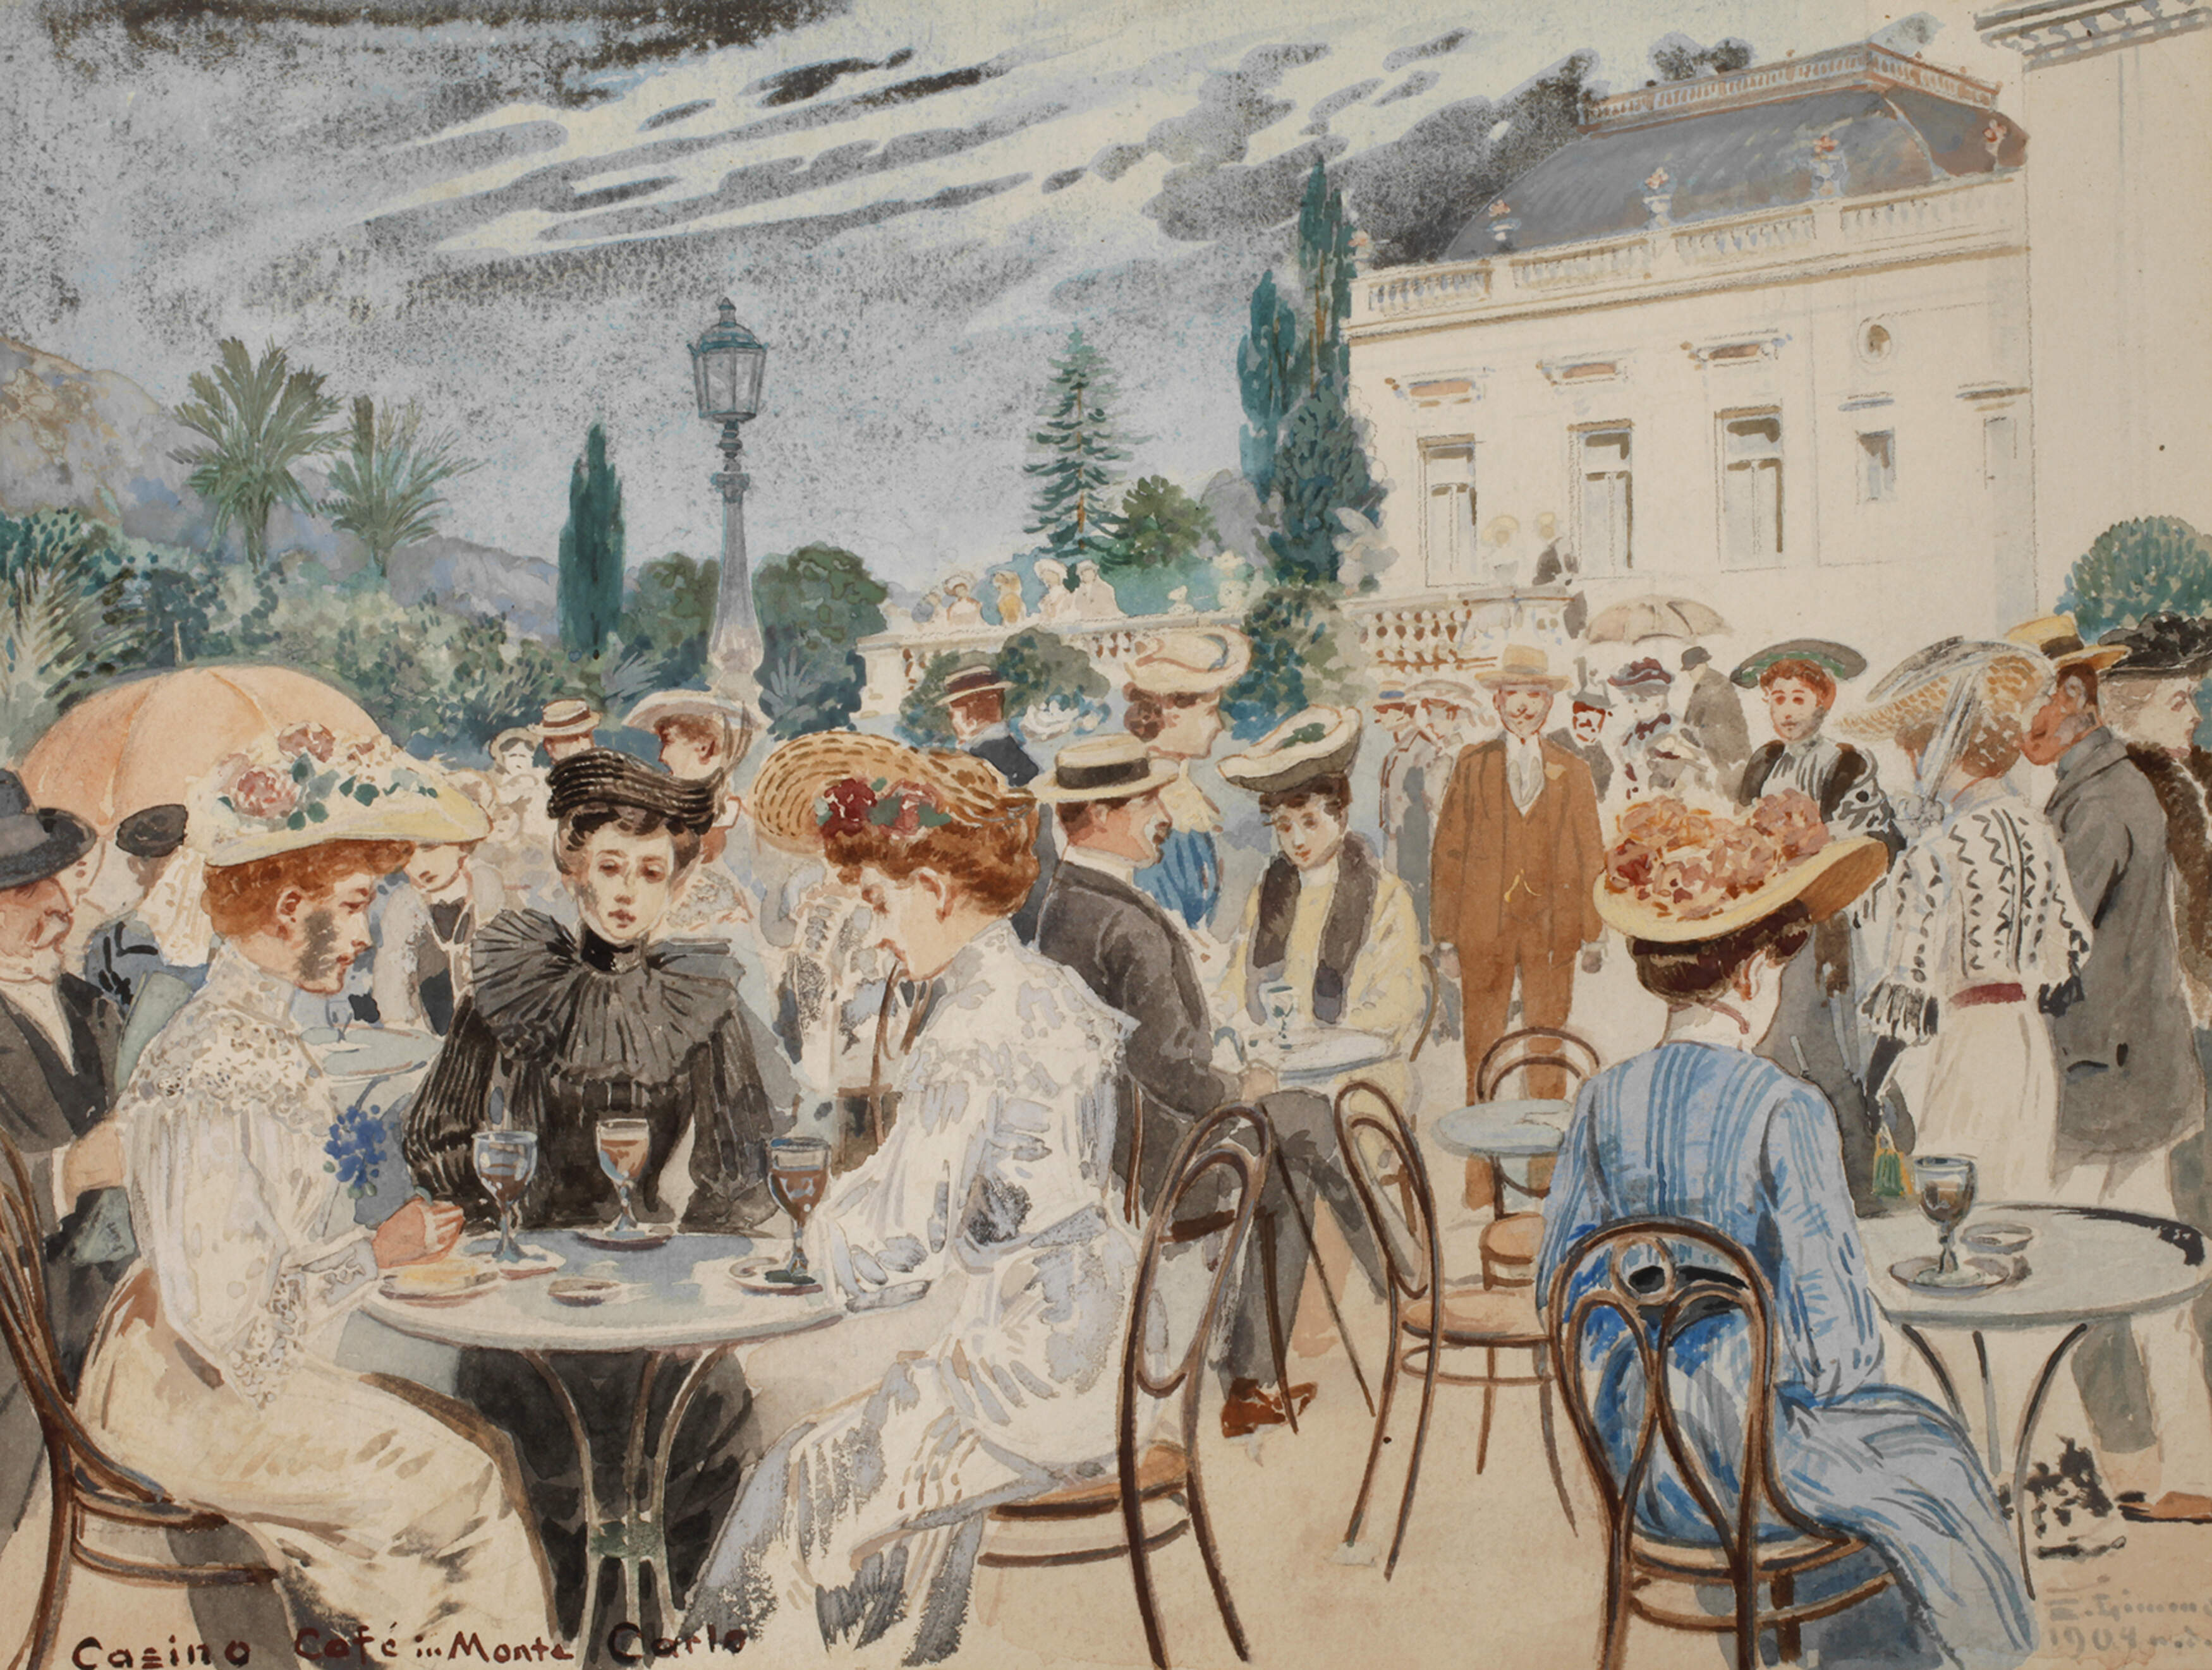 Emil Limmer,"Casino Café in Monte Carlo"